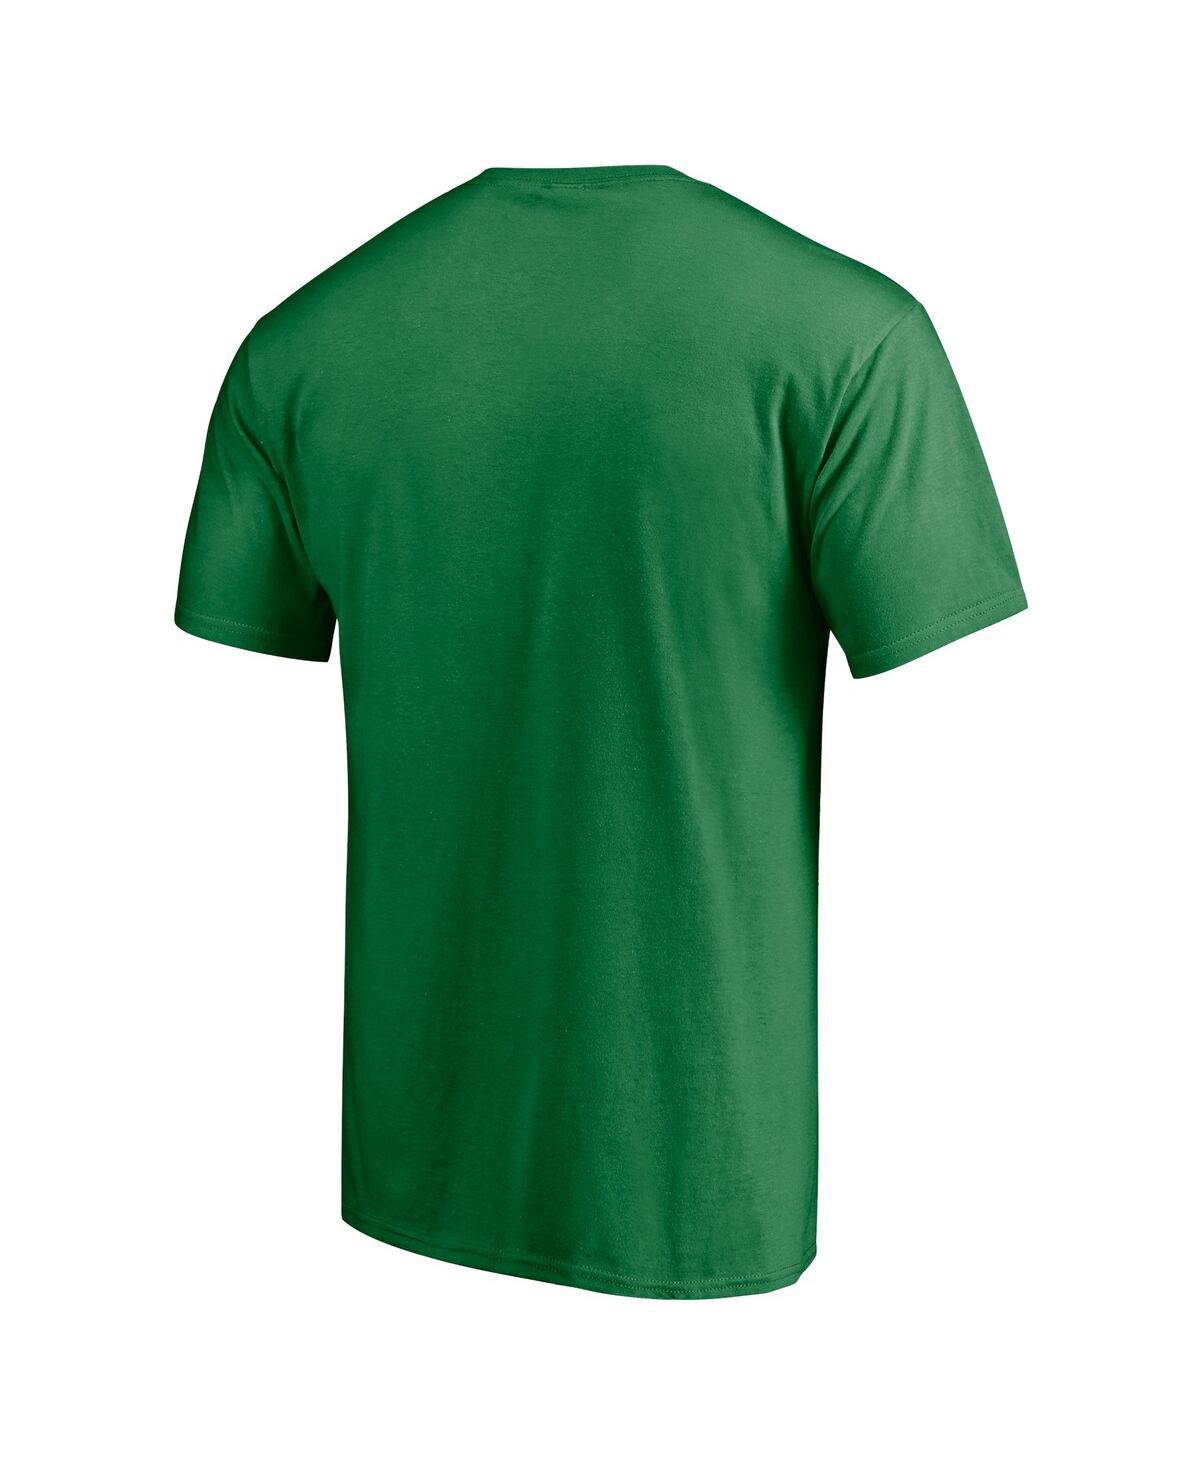 Shop Fanatics Men's  Green Oregon Ducks First Sprint Team T-shirt